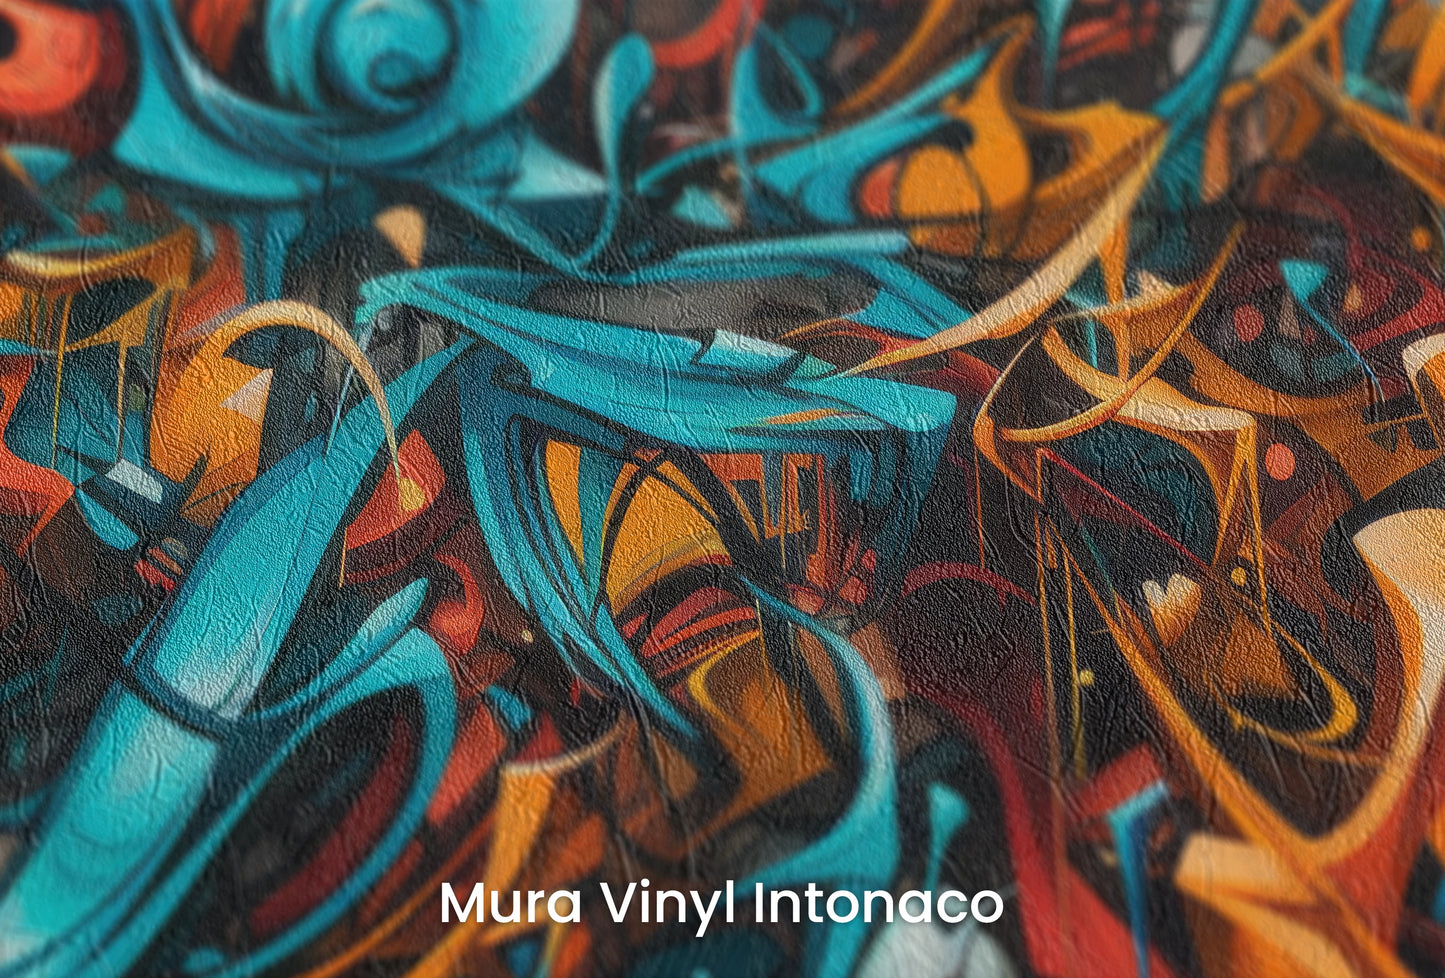 Zbliżenie na artystyczną fototapetę o nazwie Abstract Turmoil na podłożu Mura Vinyl Intonaco - struktura tartego tynku.